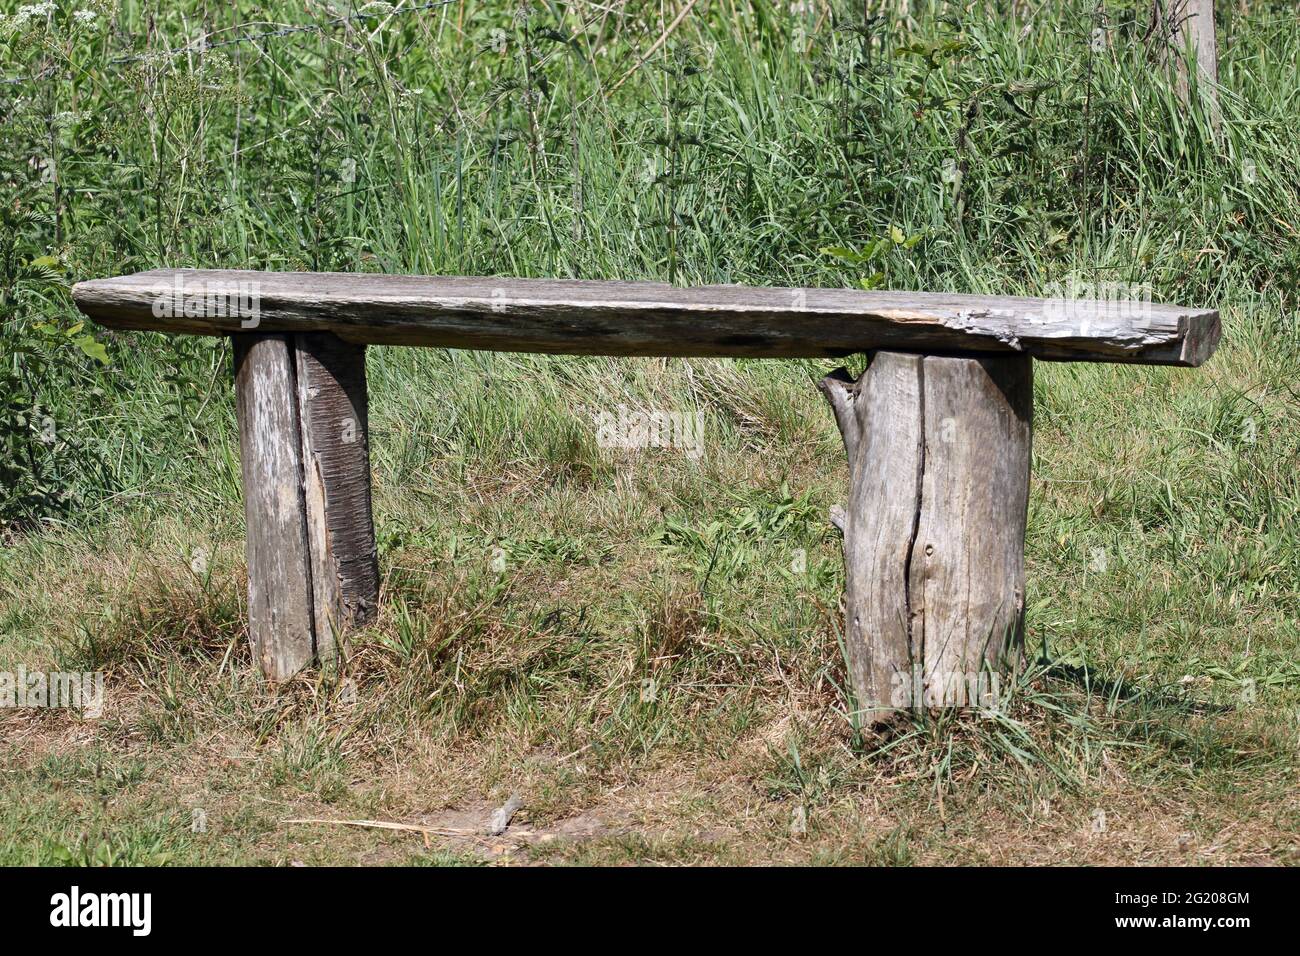 Asiento de banco de madera rústica hecho de dos troncos de tronco de árbol  cortado con una tabla a lo largo de la parte superior y un fondo de hierba  Fotografía de